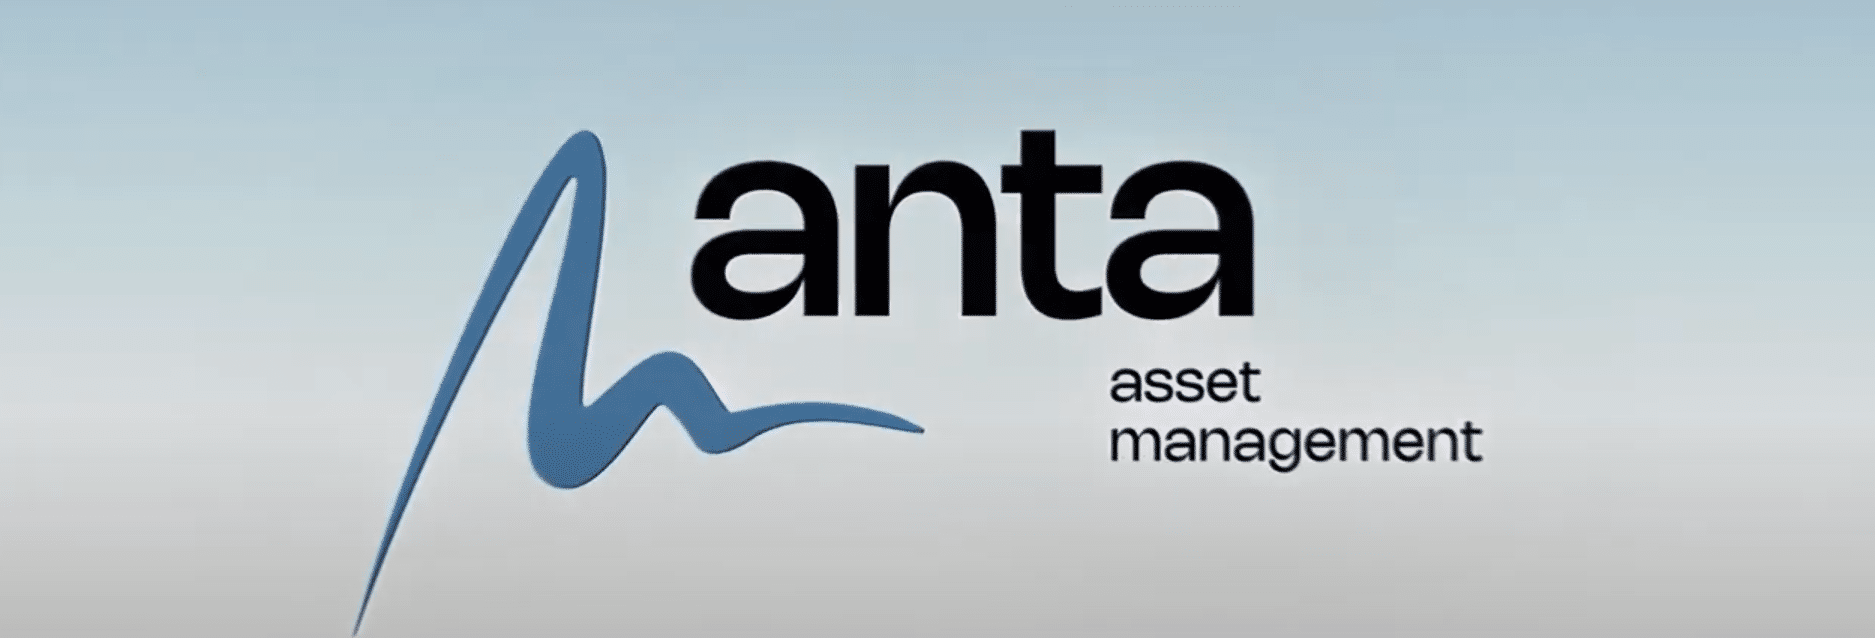 Anta AM estrena sus primeros tres fondos: Dos de renta fija y uno de bolsa global